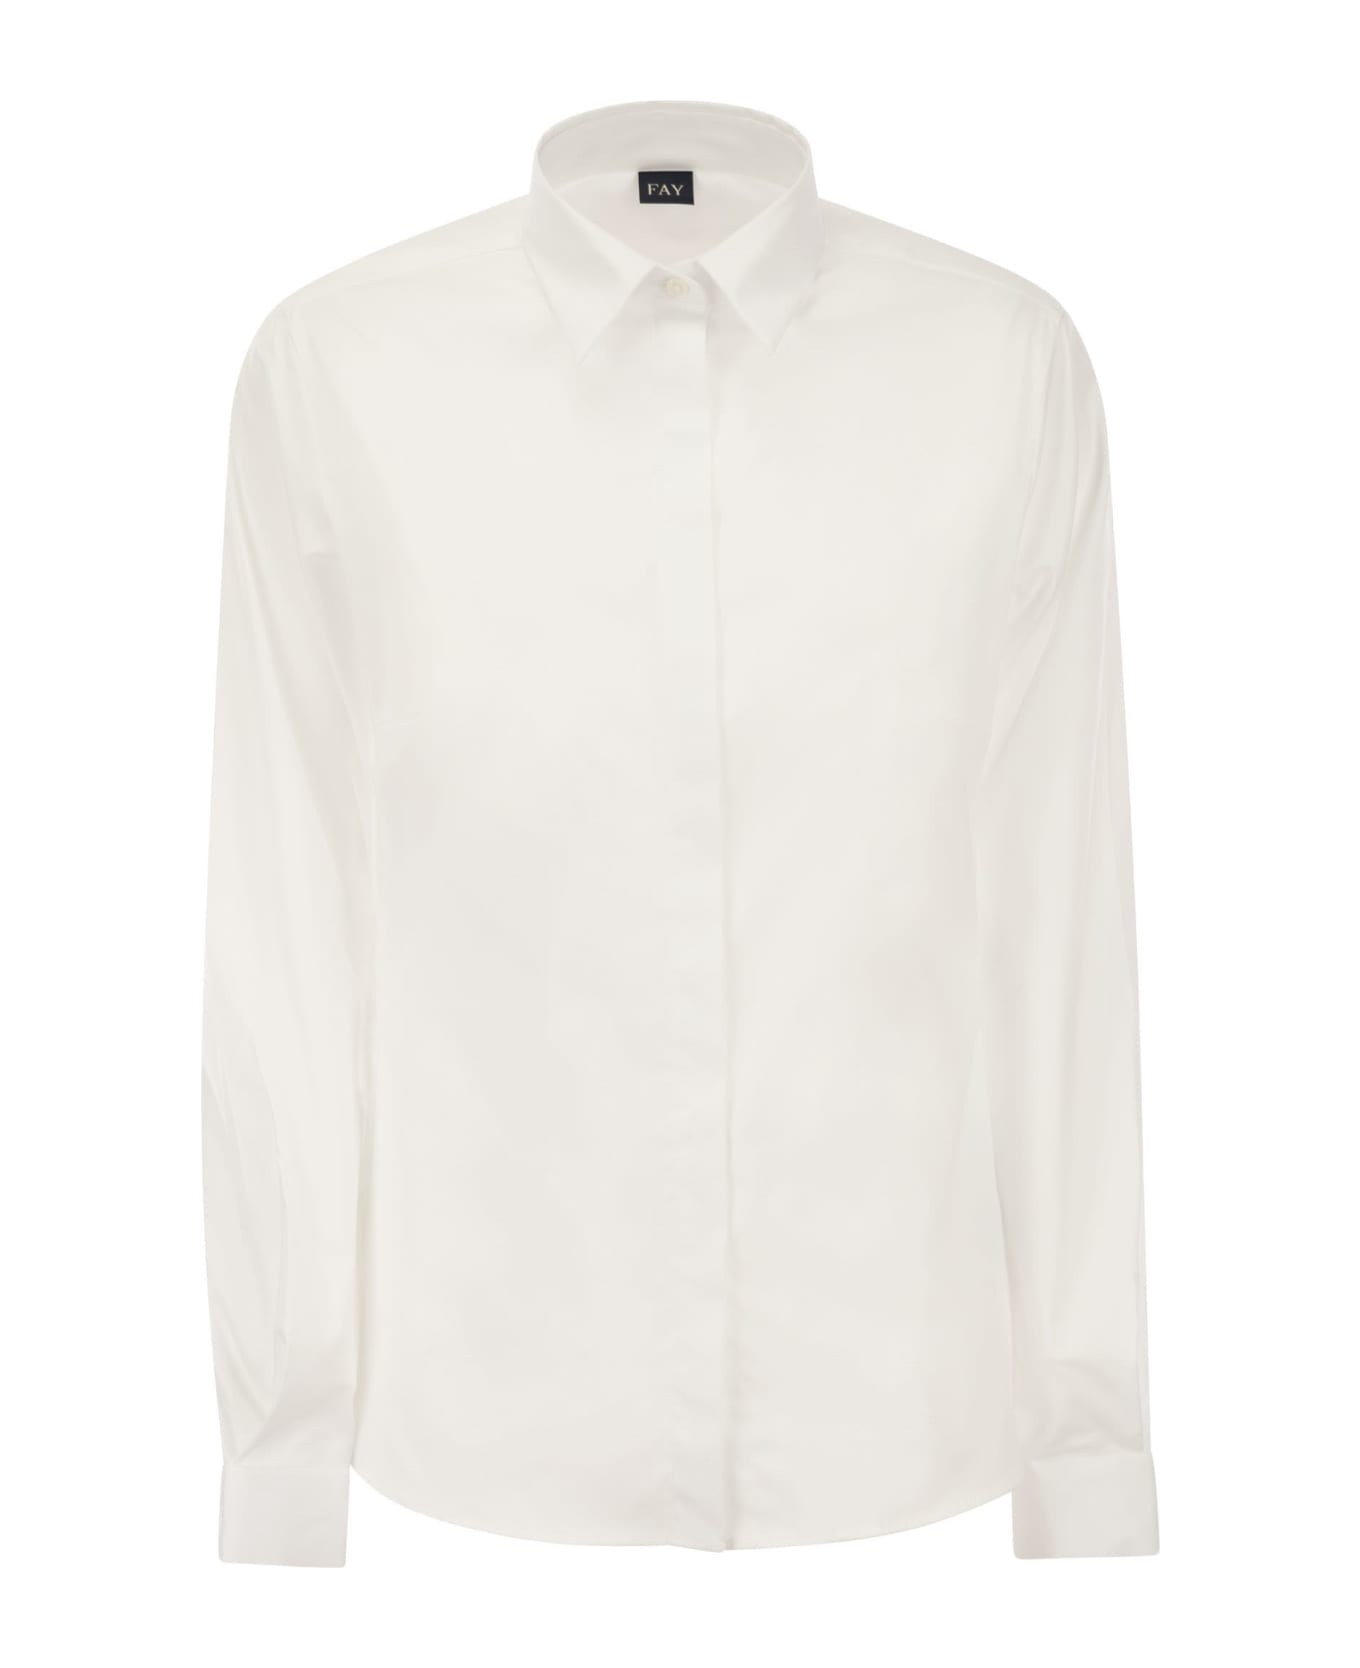 Fay Italian Neck Shirt - White シャツ